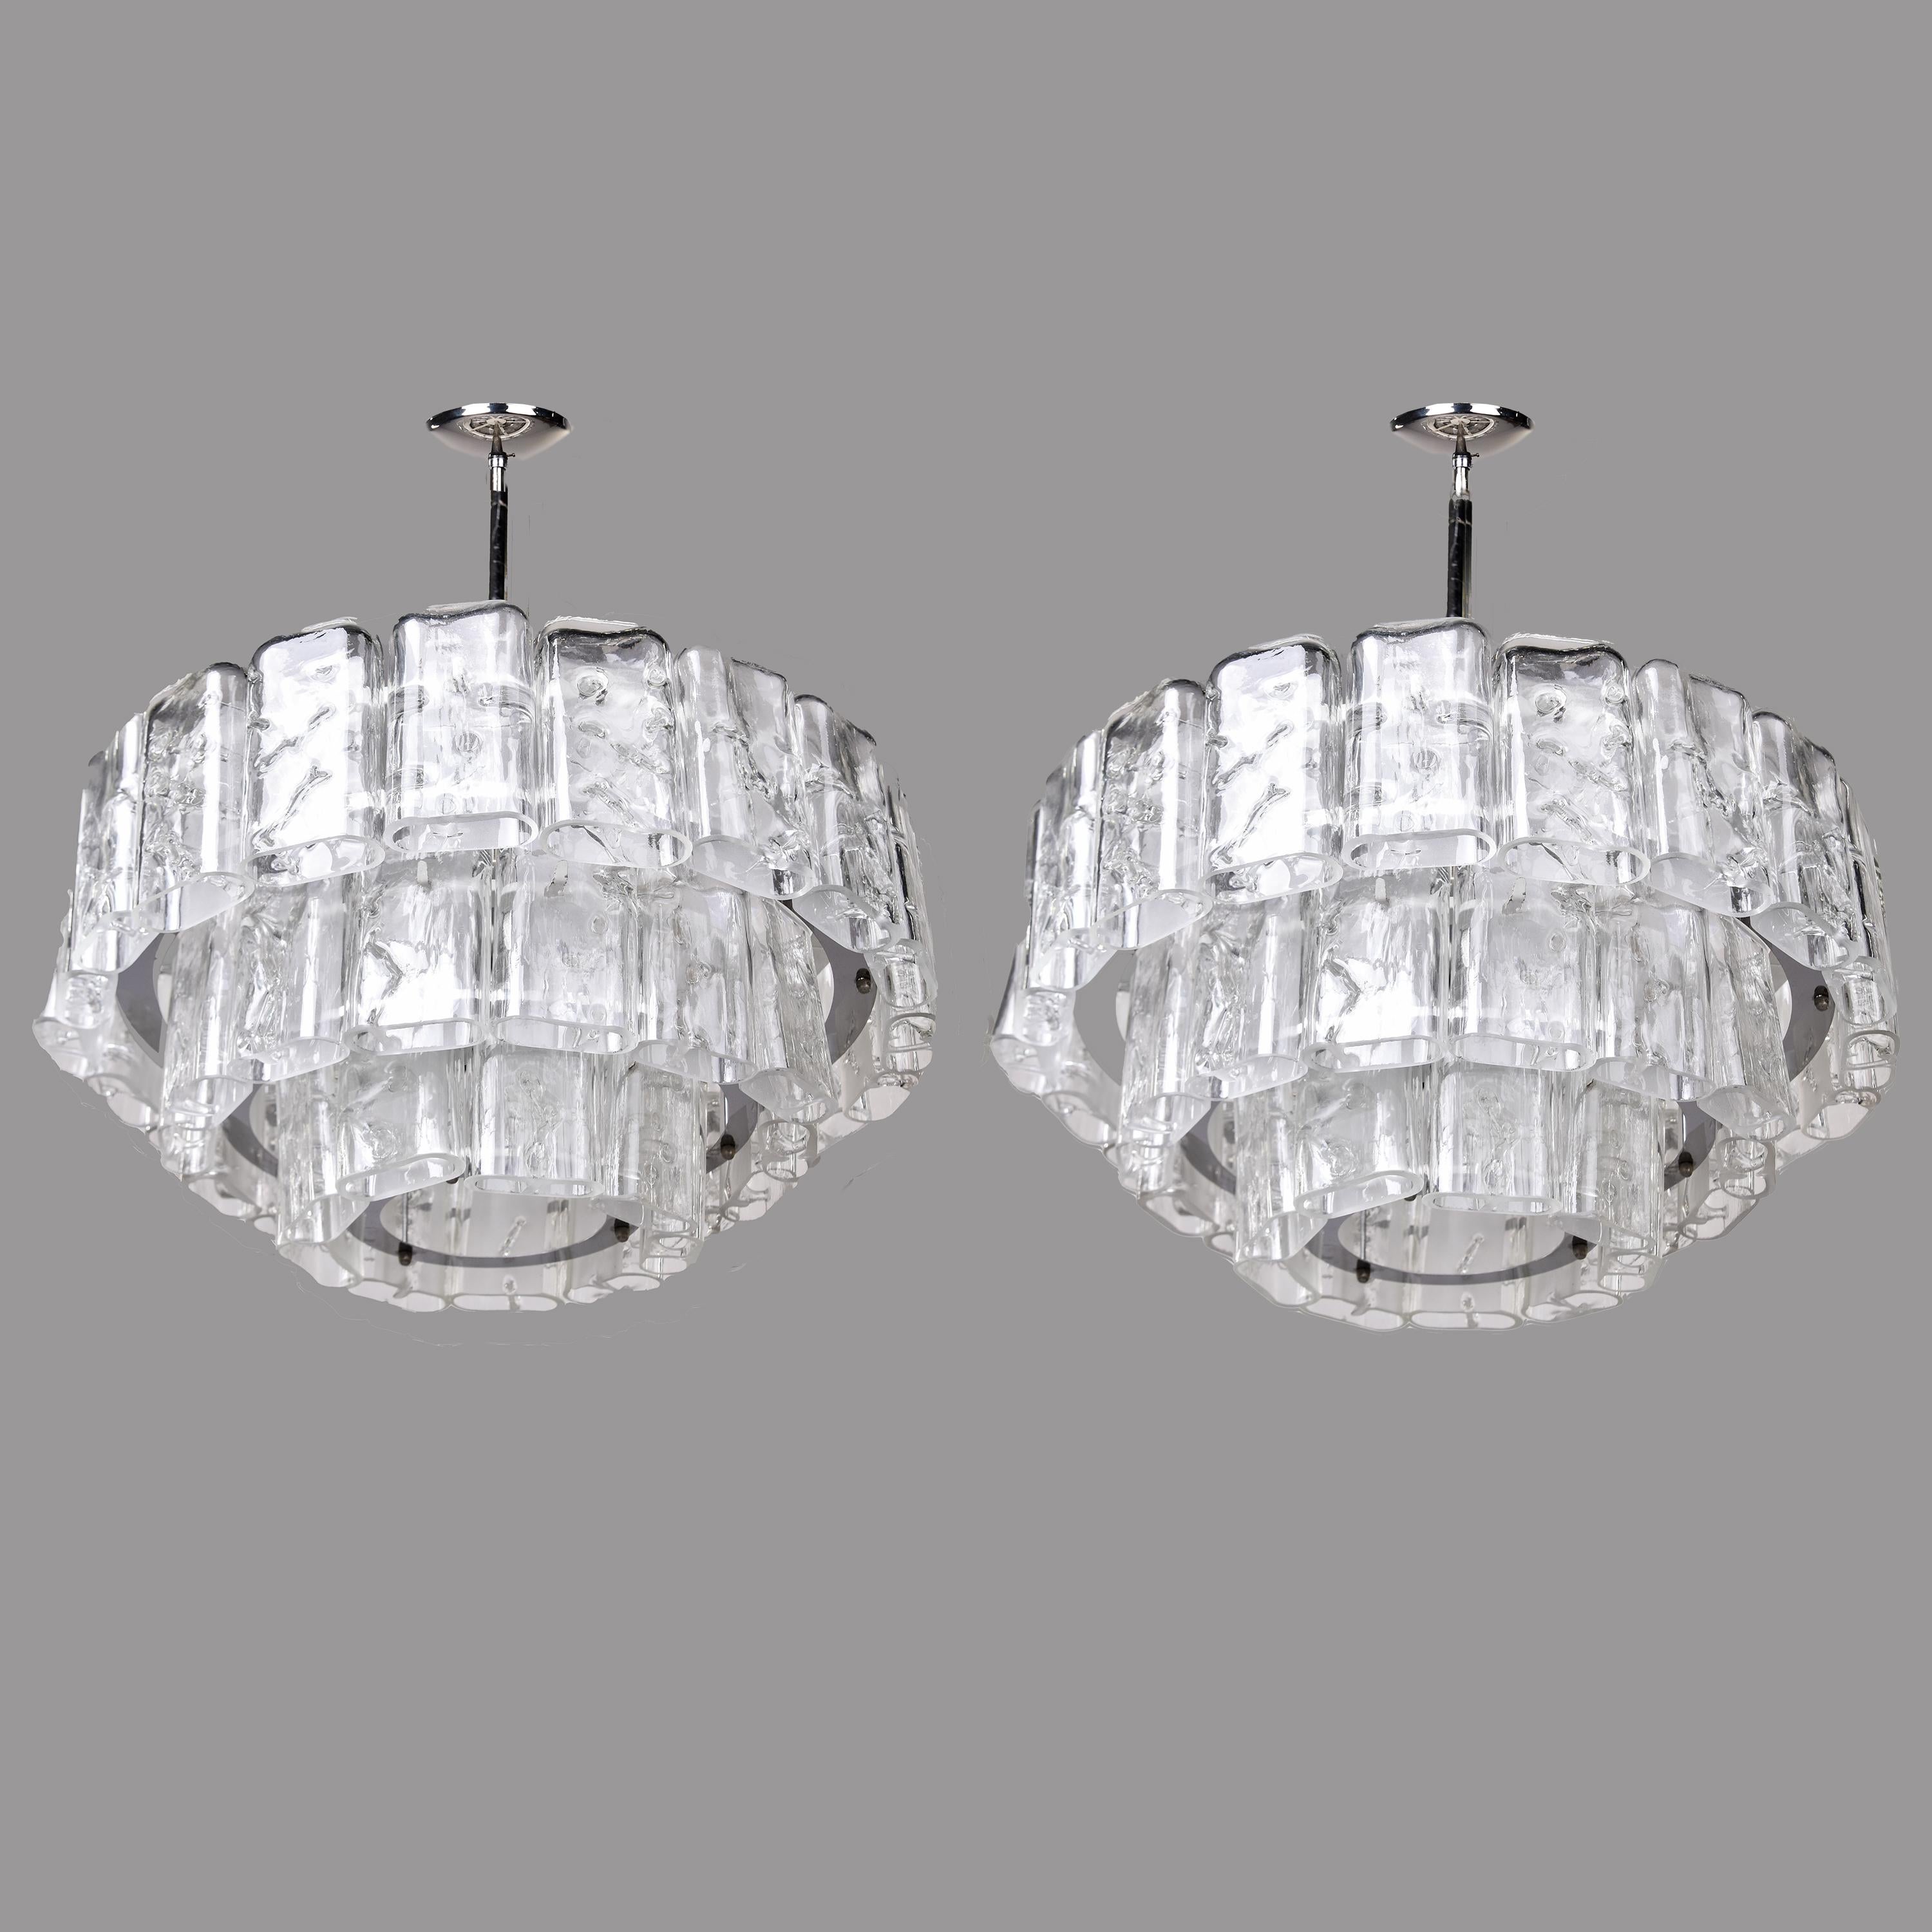 Cette paire de lustres modernistes à trois niveaux du fabricant allemand Doria date des années 1960. Les chandeliers ont des cadres en métal avec trois niveaux gradués de pendentifs en verre transparent de forme oblongue qui ont un aspect glacé et